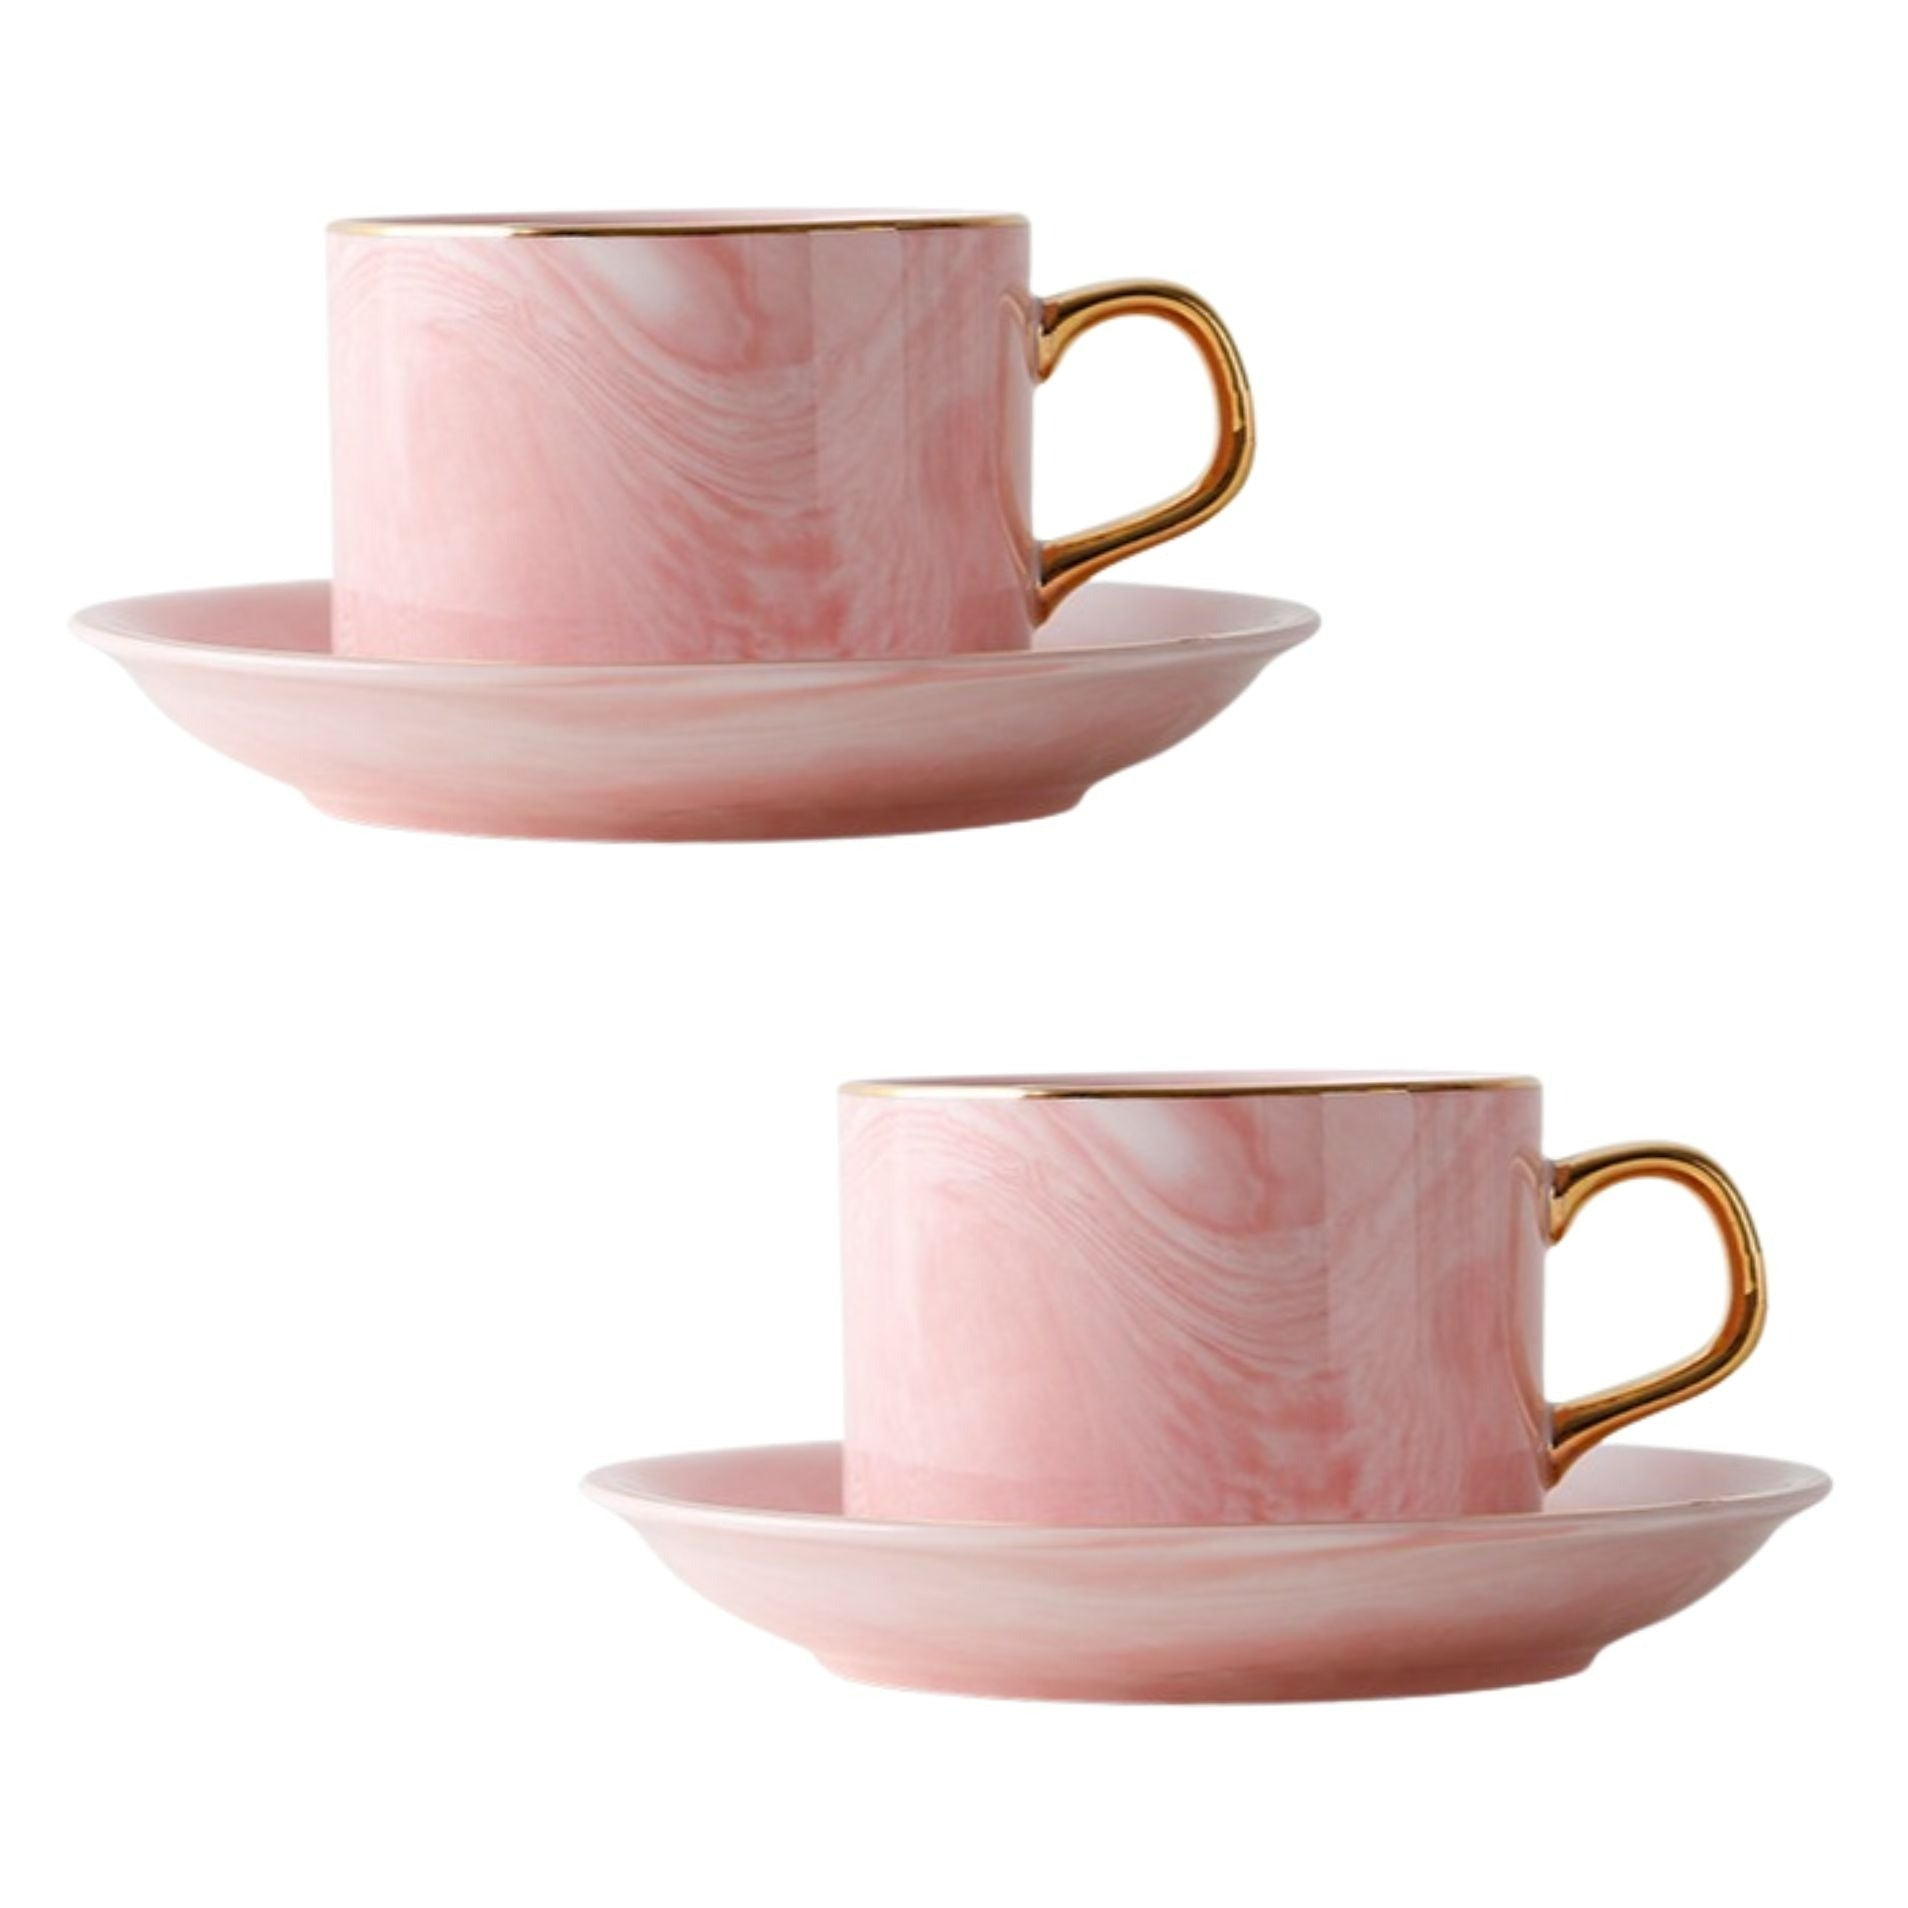 marmor-tassen-set-untertasse-rosa-goldener-henkel-2er-set Cappuccino